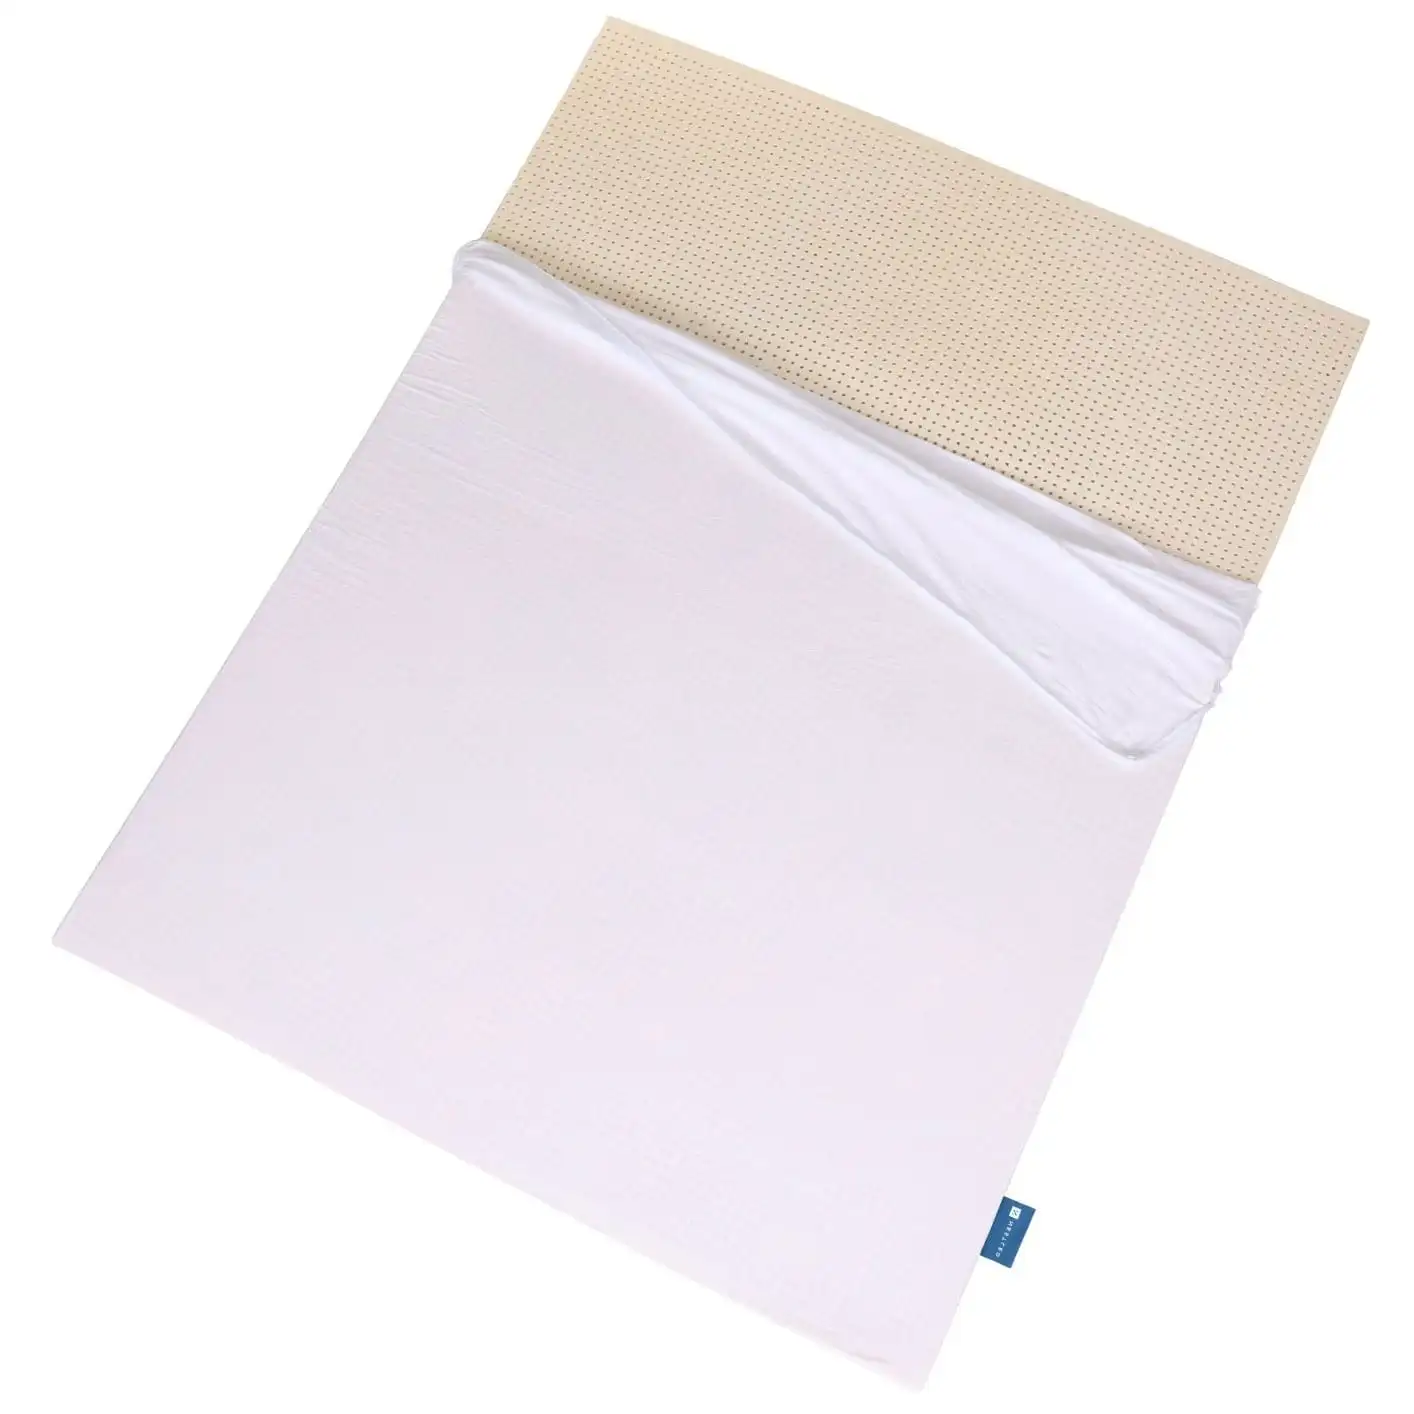 A mattress sheet protector placed over a mattress pad